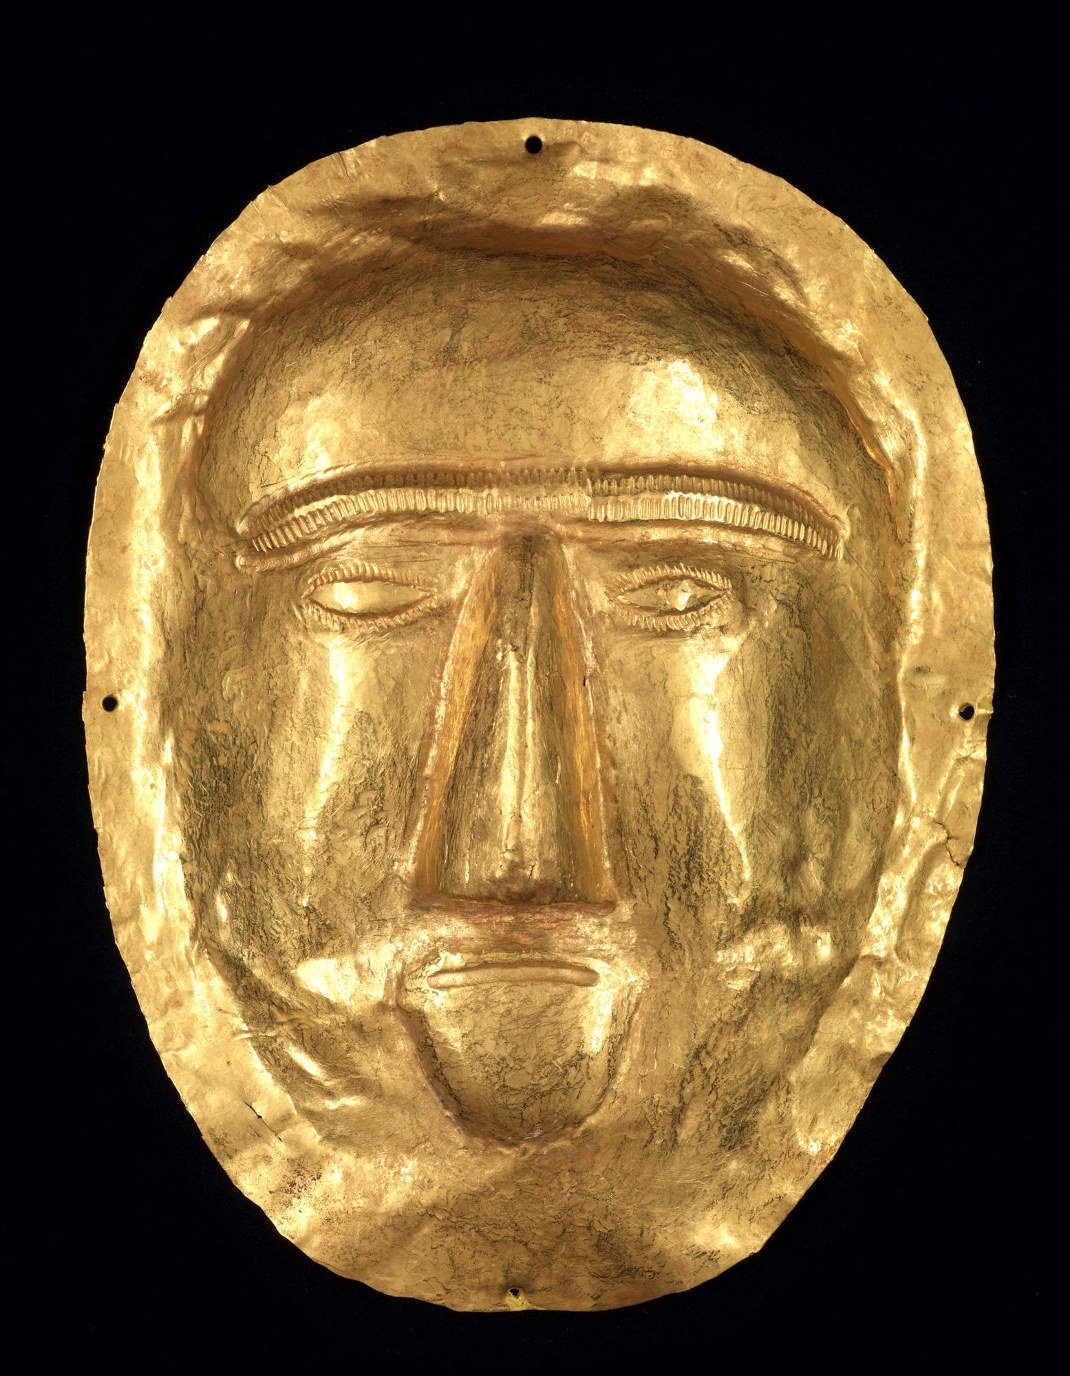 Ταφική μάσκα. Από τη Θατζ, Τελλ αλ-Ζάιερ. 1ος αιώνας μ.Χ. Χρυσός Εθνικό Μουσείο, Ριάντ